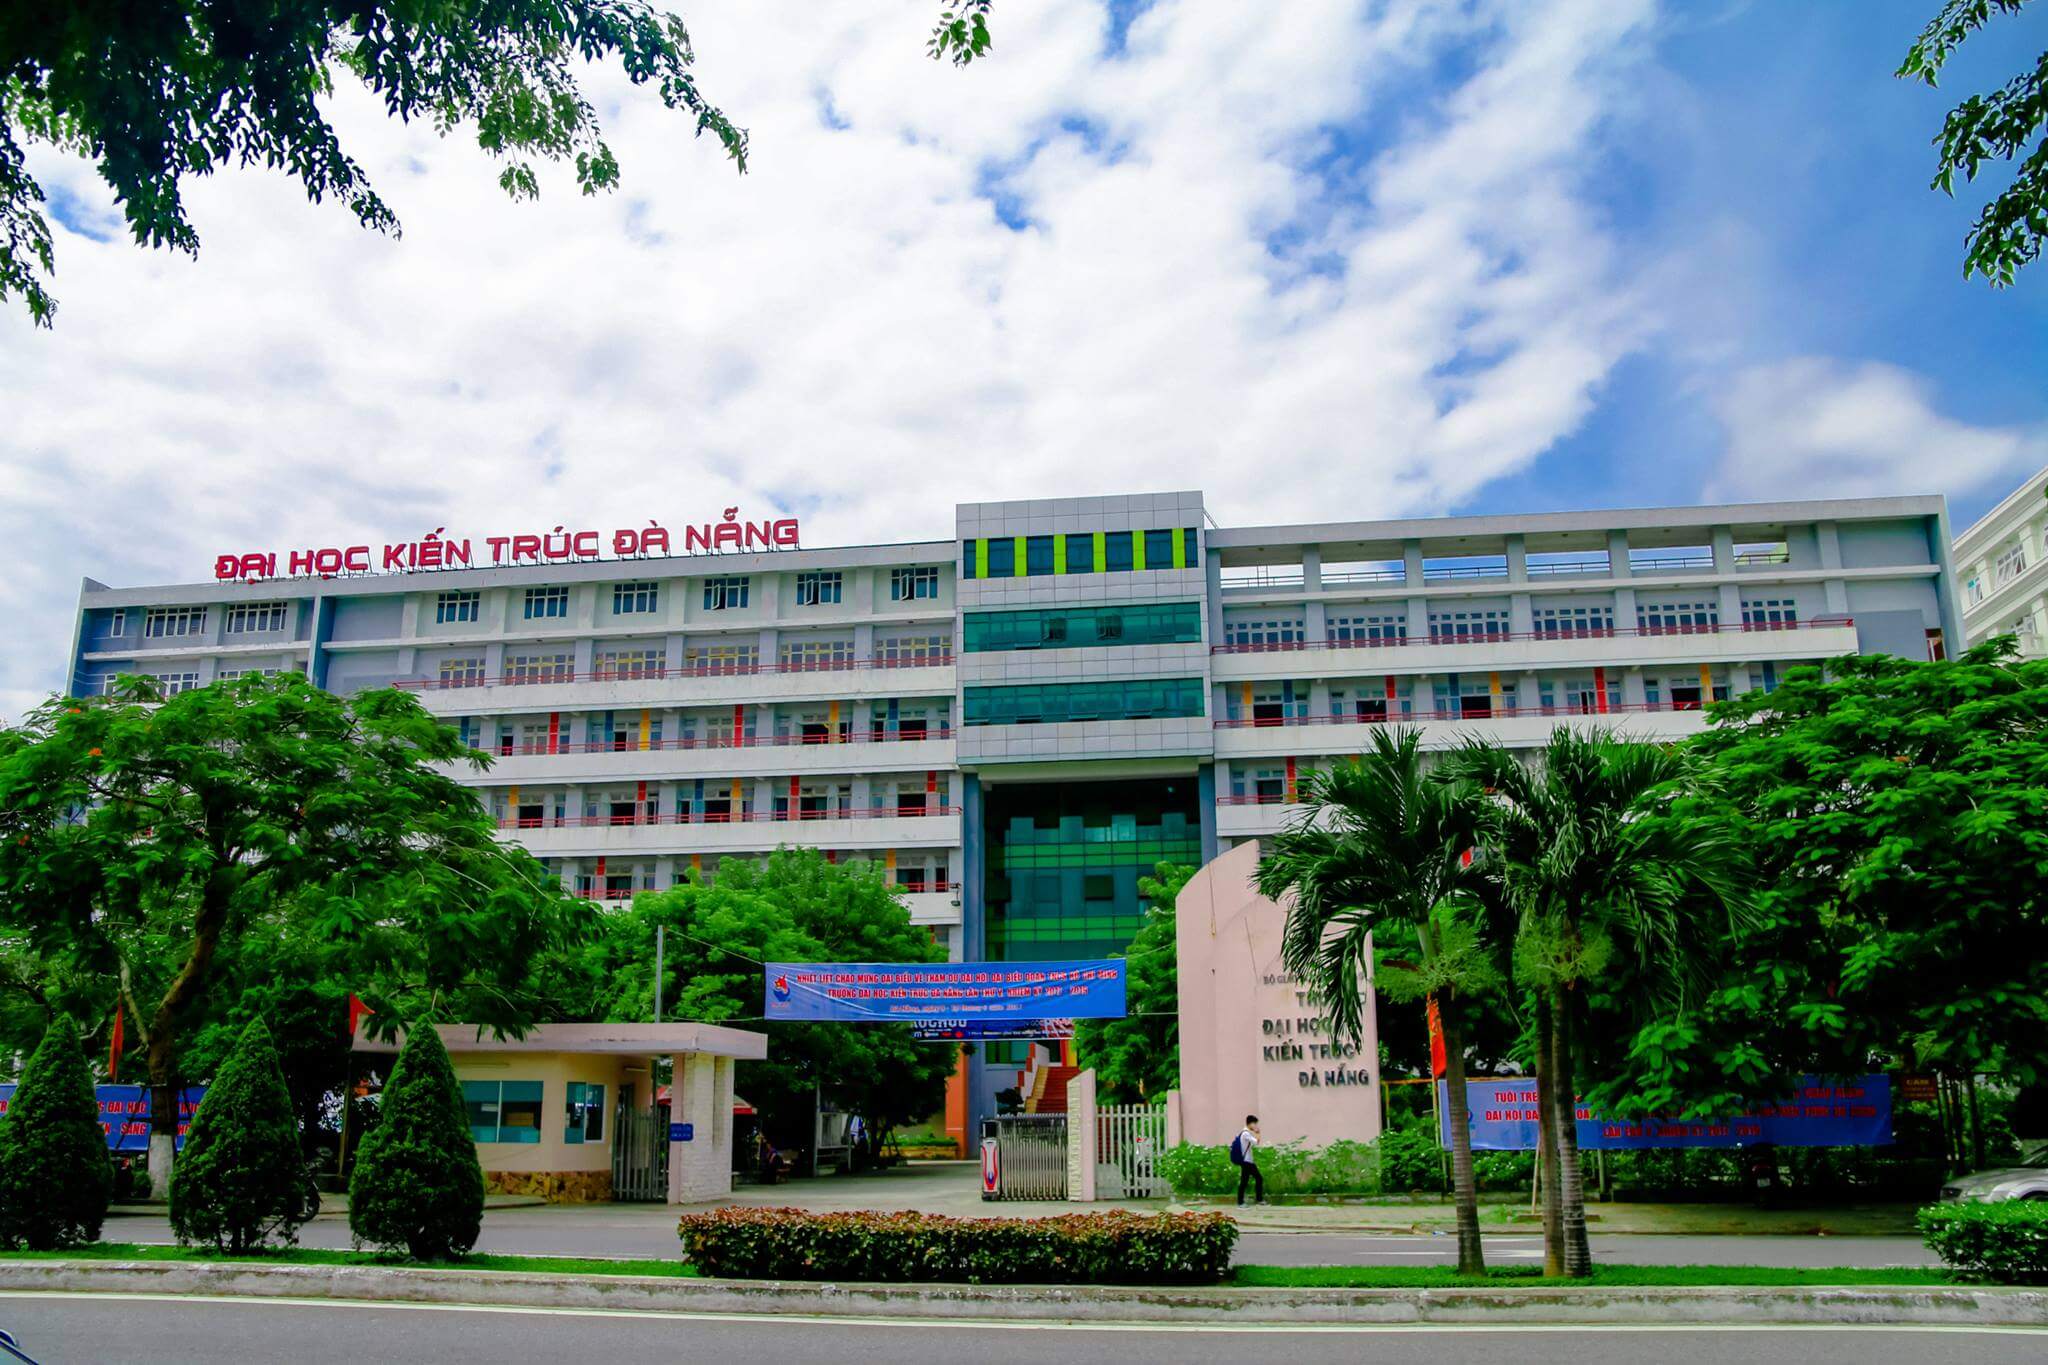 Đại học Kiến trúc Đà Nẵng DAU